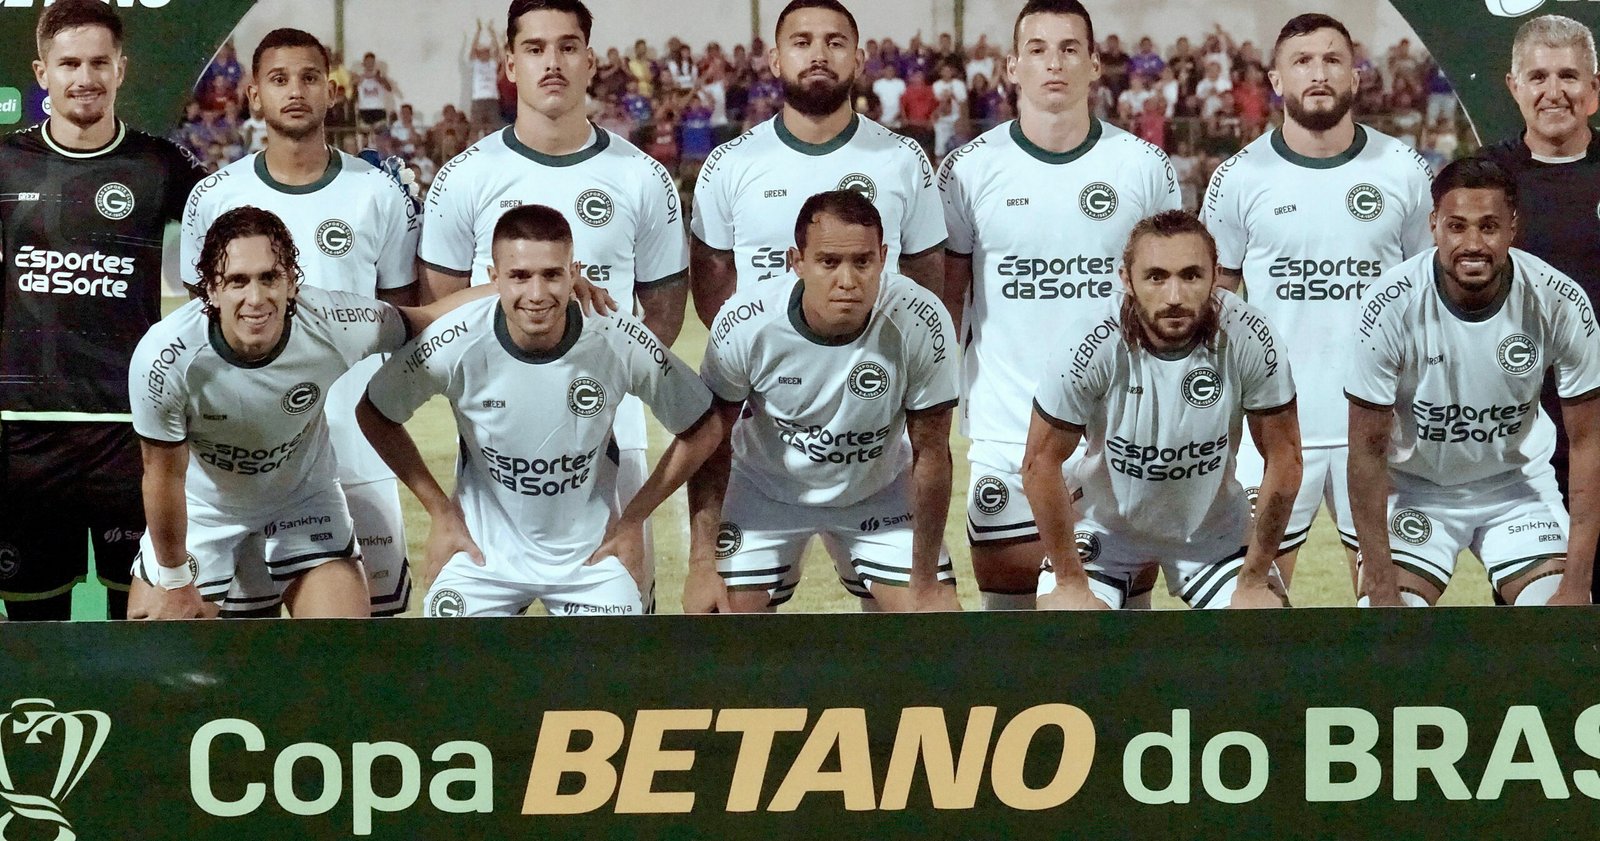 Edminho Pinheiro lamenta eliminação precoce do Goiás na Copa do Brasil e avalia contexto financeiro: “Prejuízo enorme”